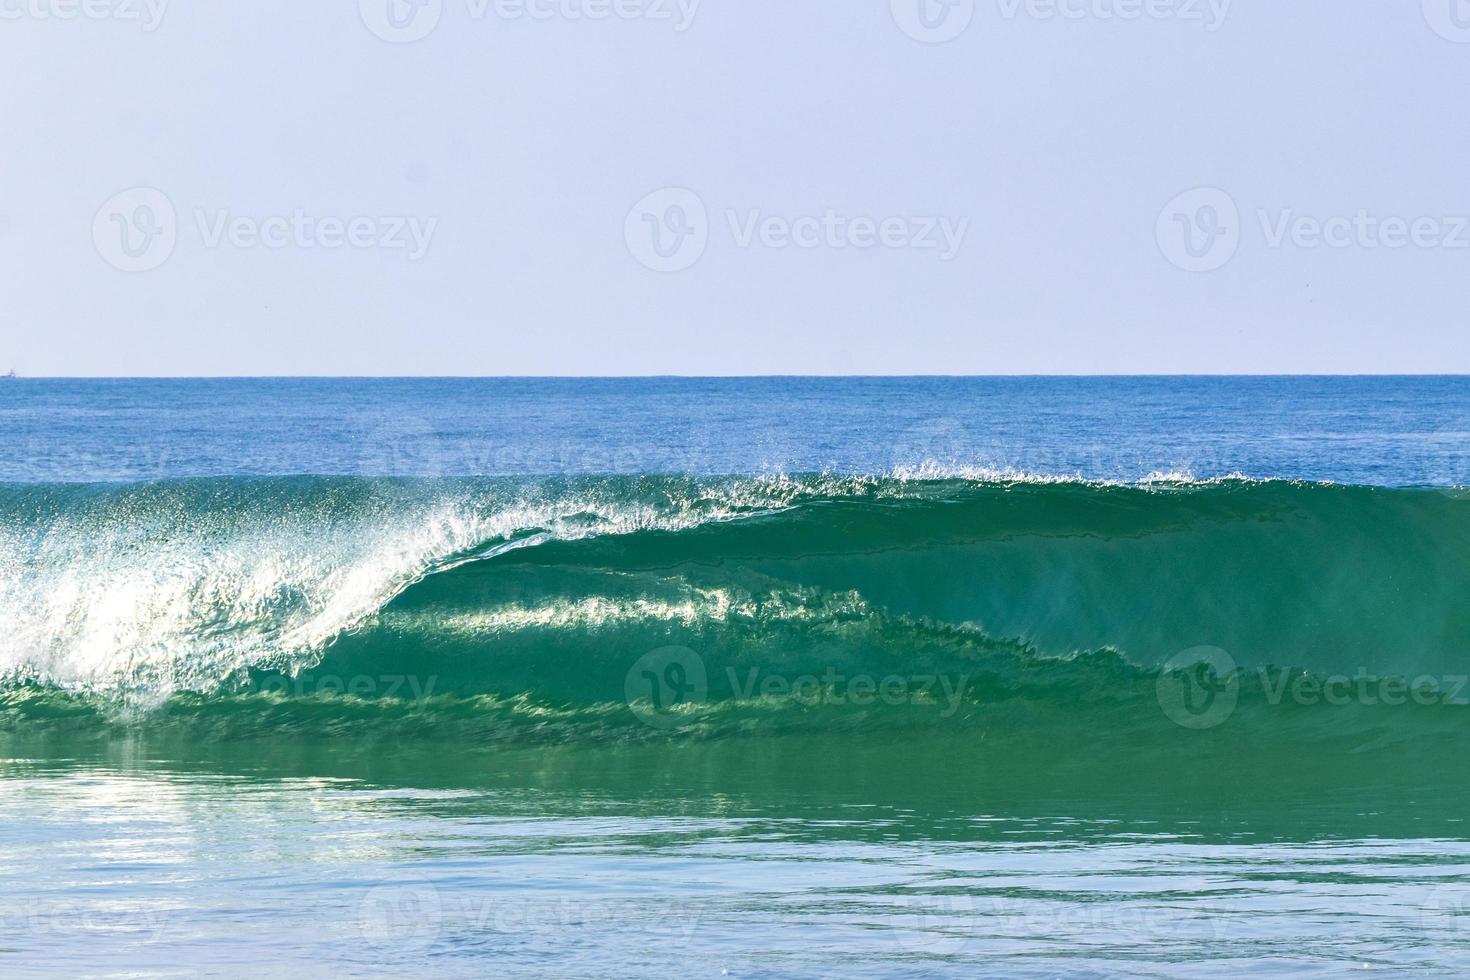 De grosses vagues de surfeurs extrêmement énormes à la plage de puerto escondido au mexique. photo